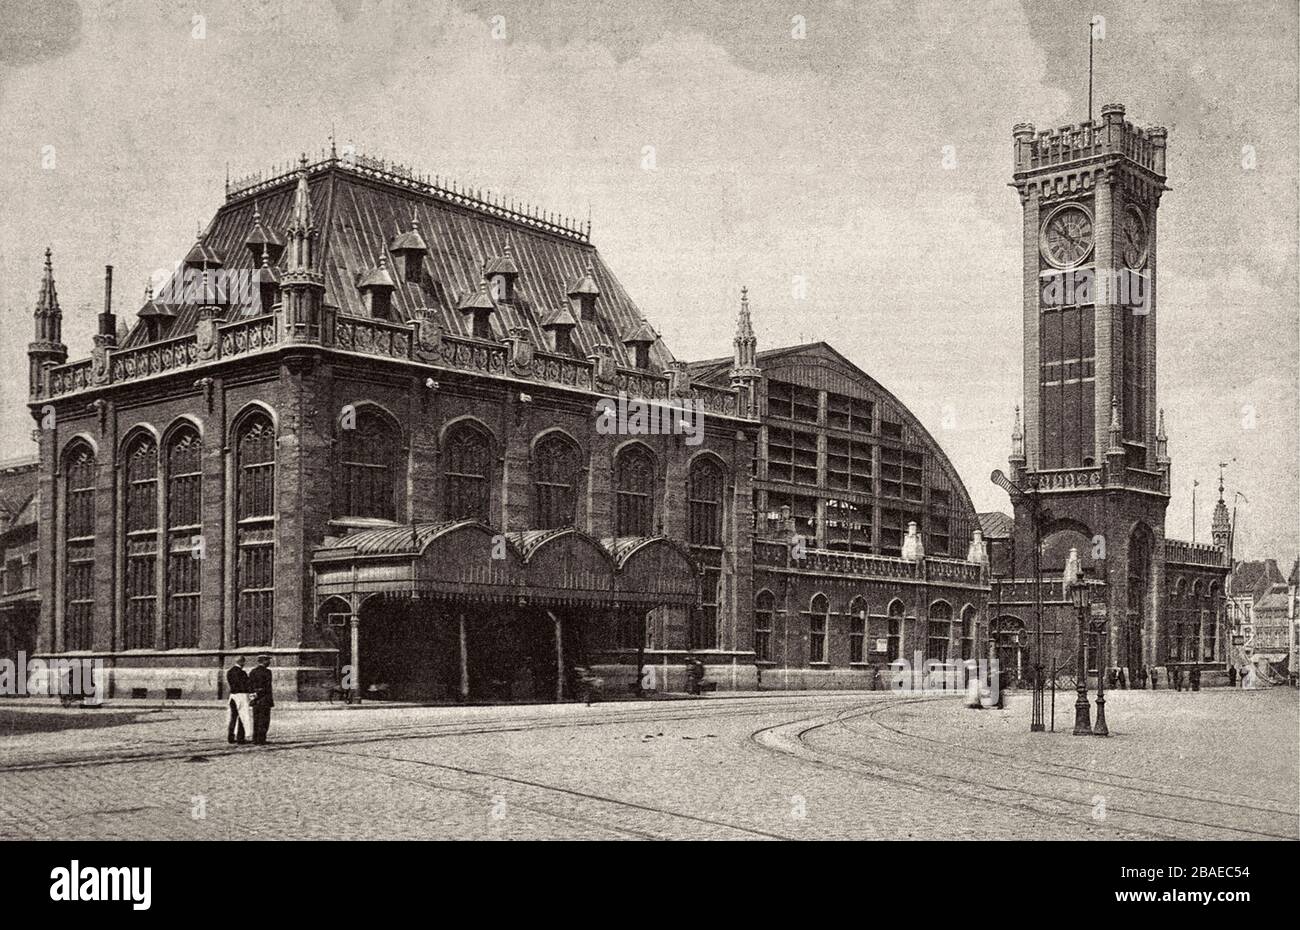 Photo rétro d'Ostende. La station du navire. Flandre Occidentale, Belgique. 192 s. Banque D'Images